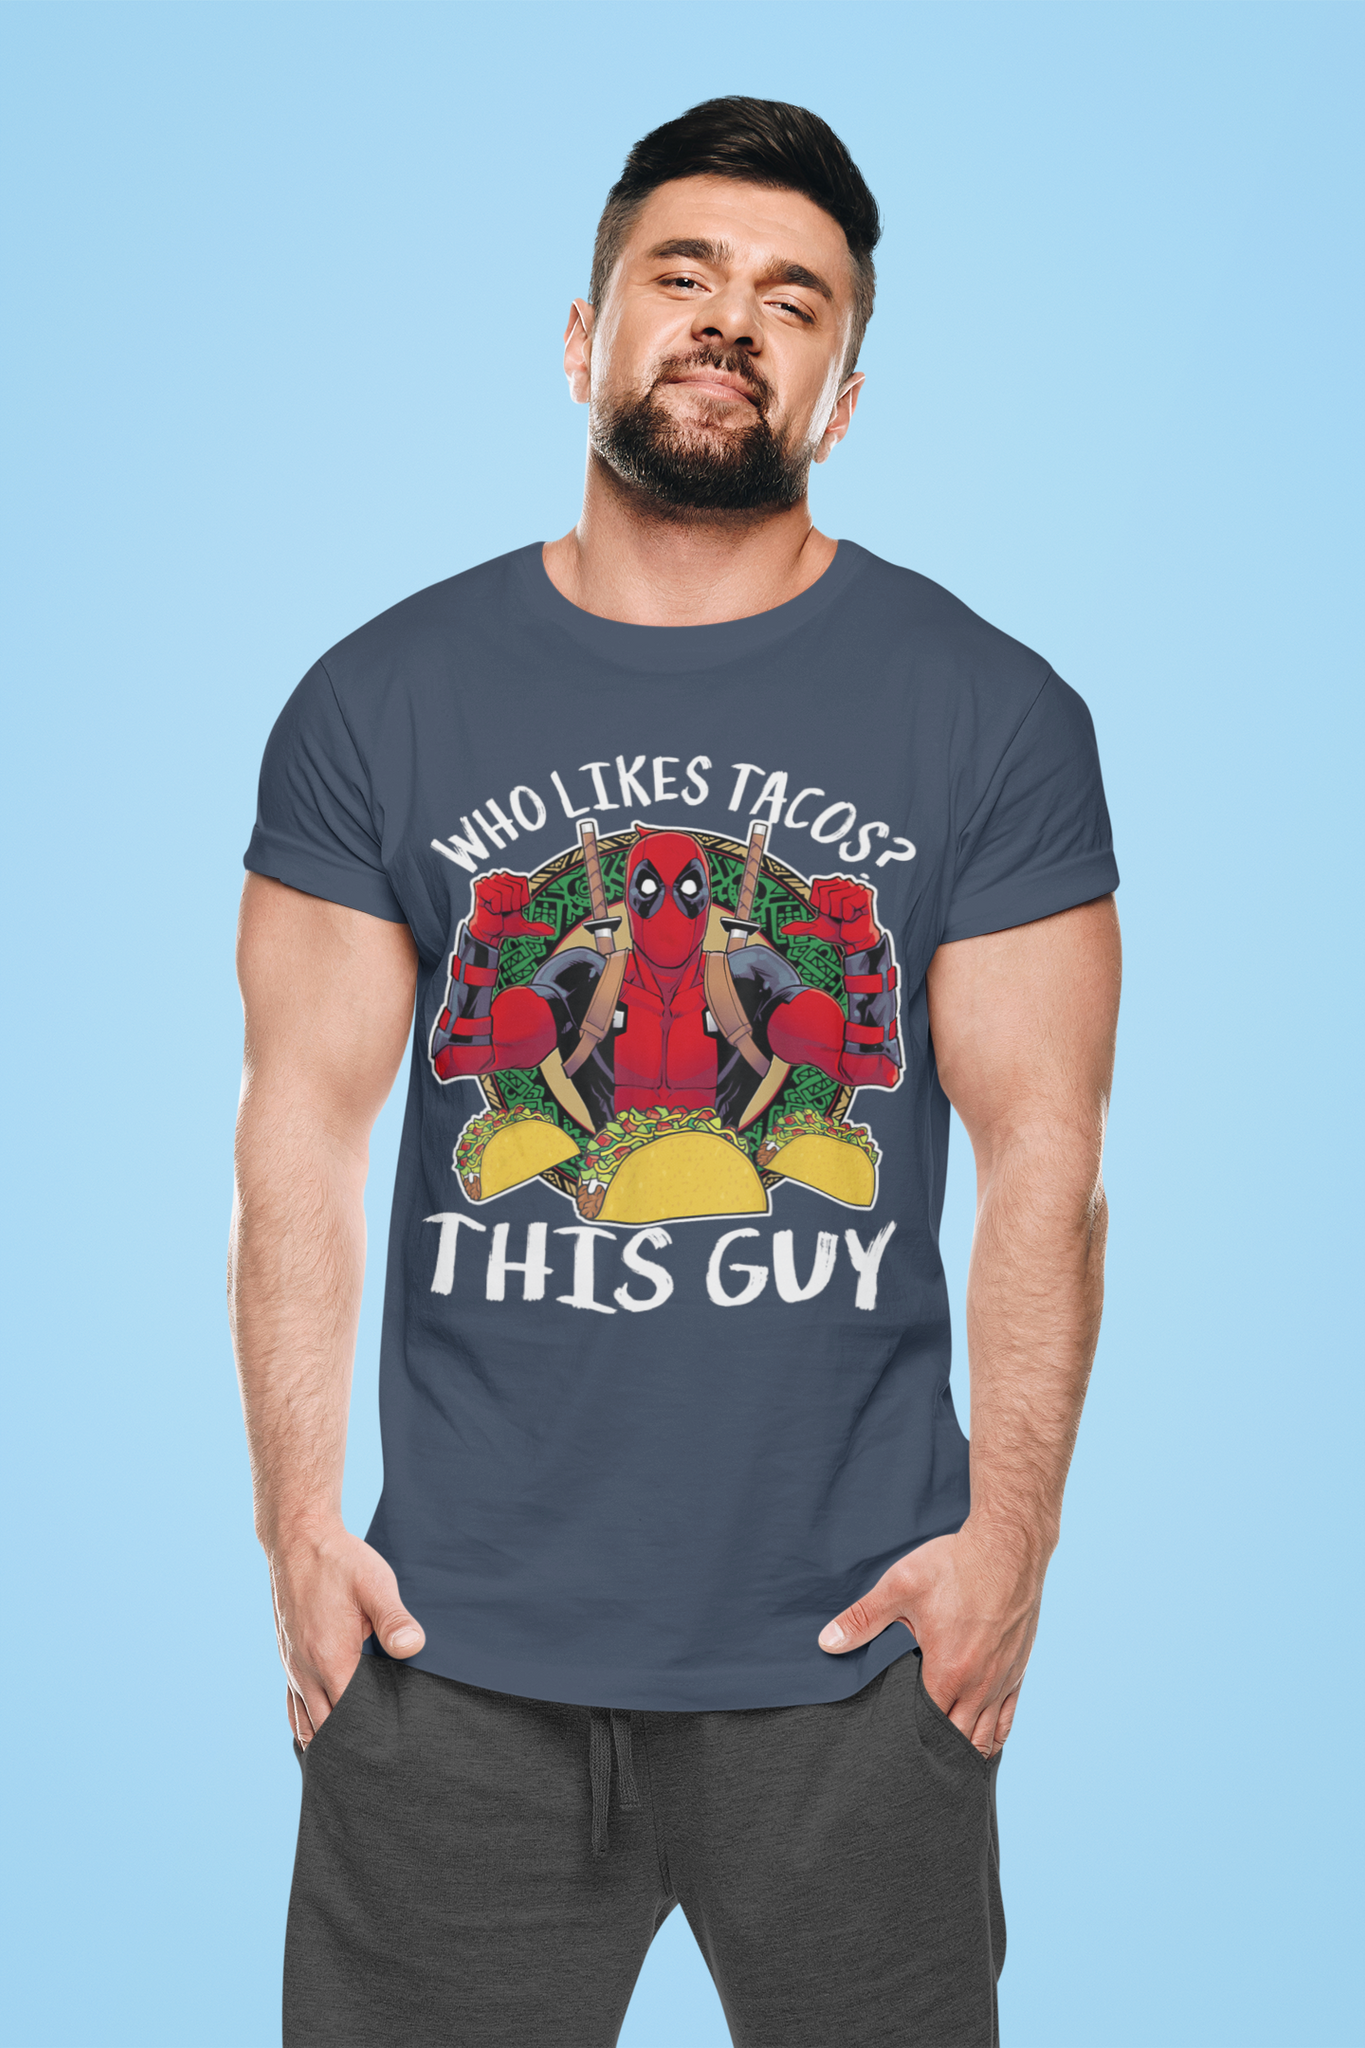 Deadpool T Shirt, Superhero Deadpool T Shirt, Who Likes Tacos This Guy Tshirt